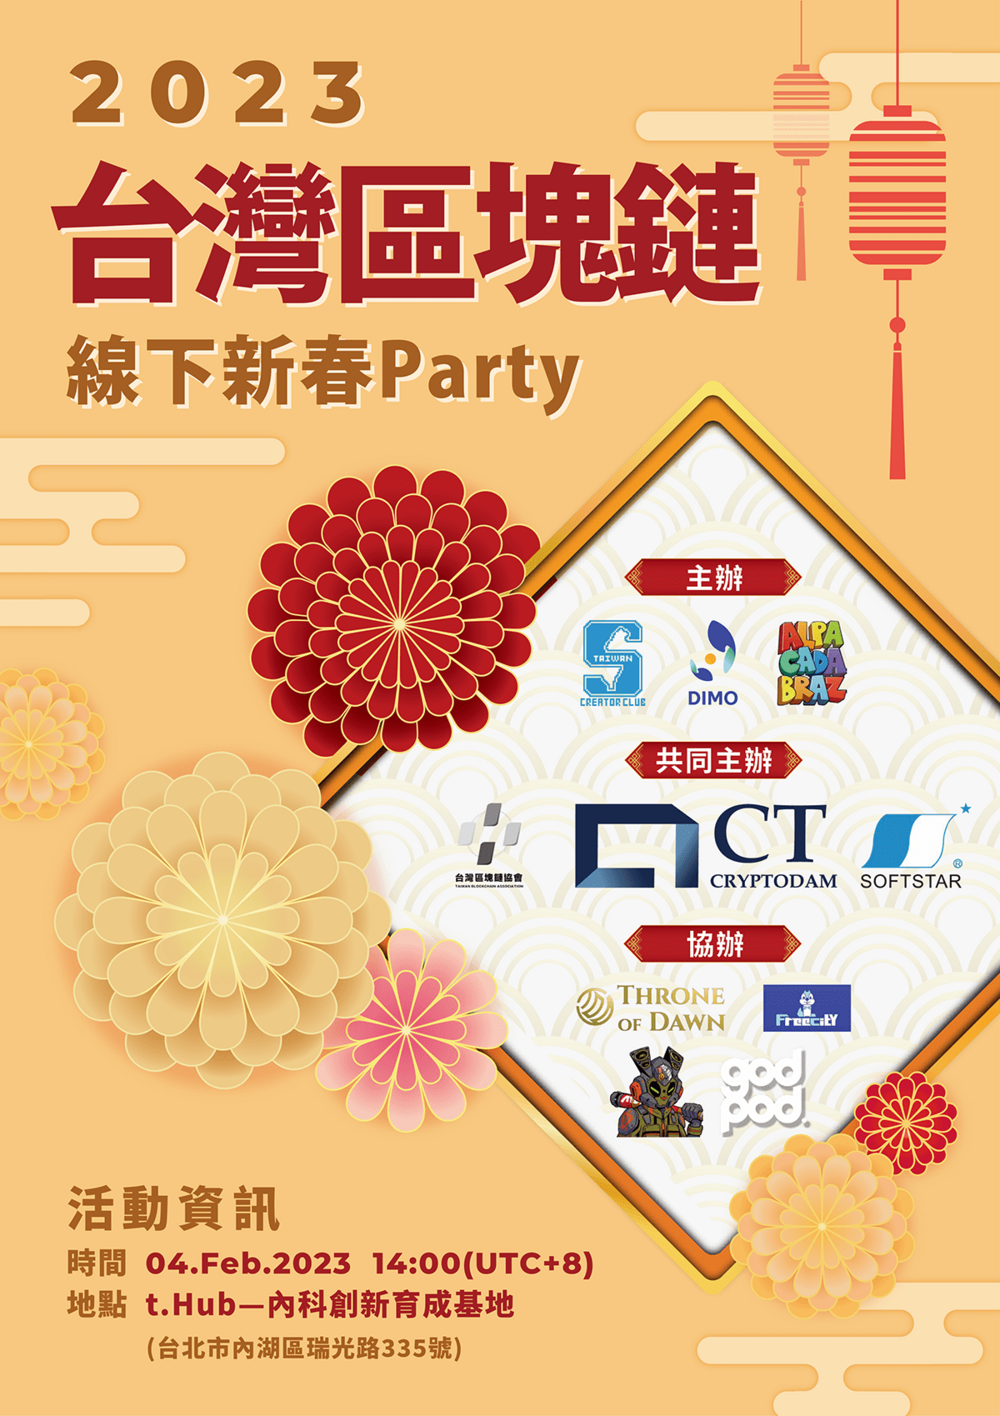 「2023台灣區塊鏈線下新春Party」開年最大盛會！在t.Hub內科創新育成基地 - 台北郵報 | The Taipei Post